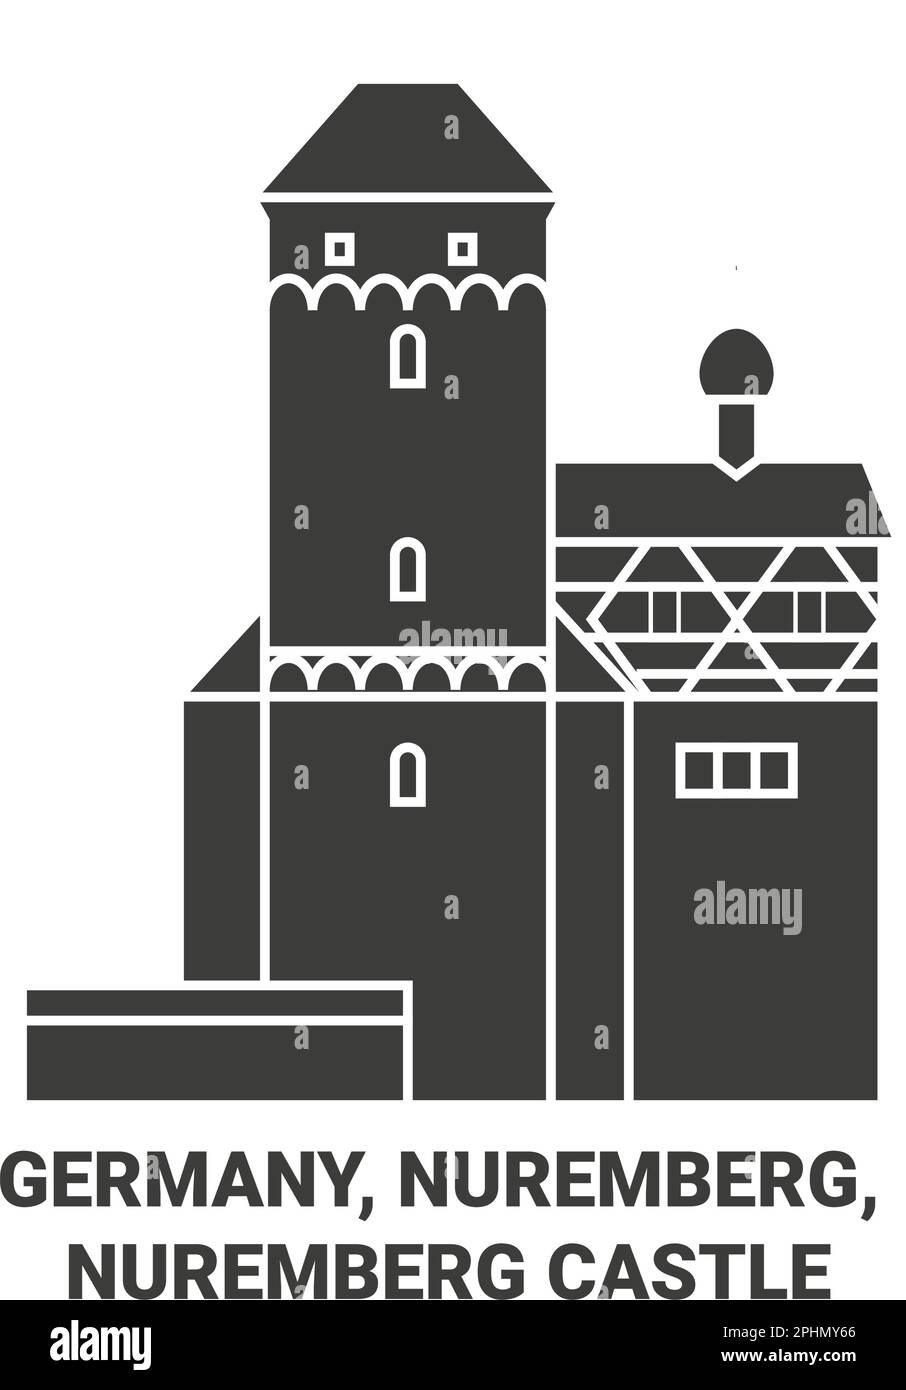 Allemagne, Nuremberg, château de Nuremberg Voyage illustration vecteur Illustration de Vecteur